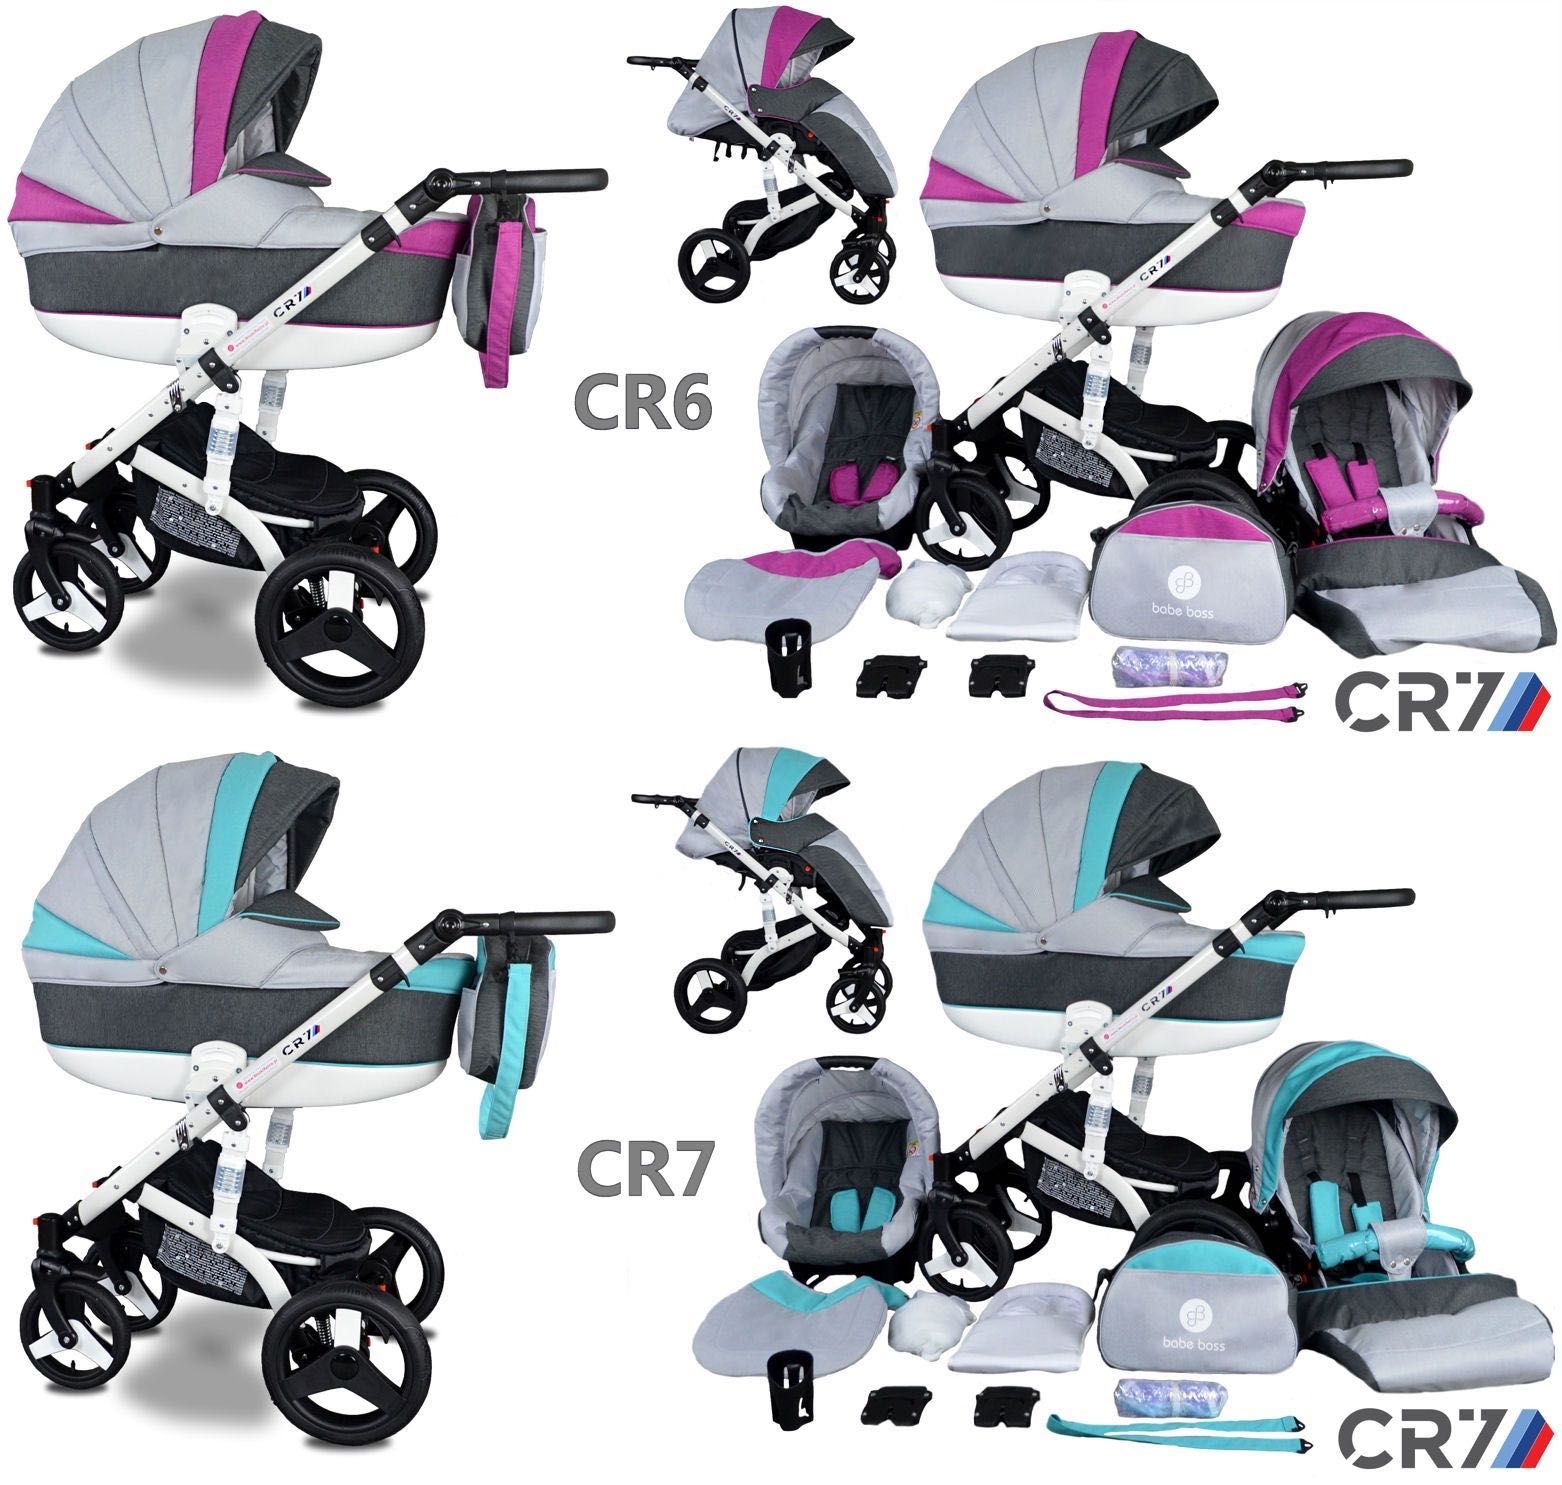 NOWY Wózek Dziecięcy CR7 zestaw 3w1 Gondola Spacerówka Fotelik